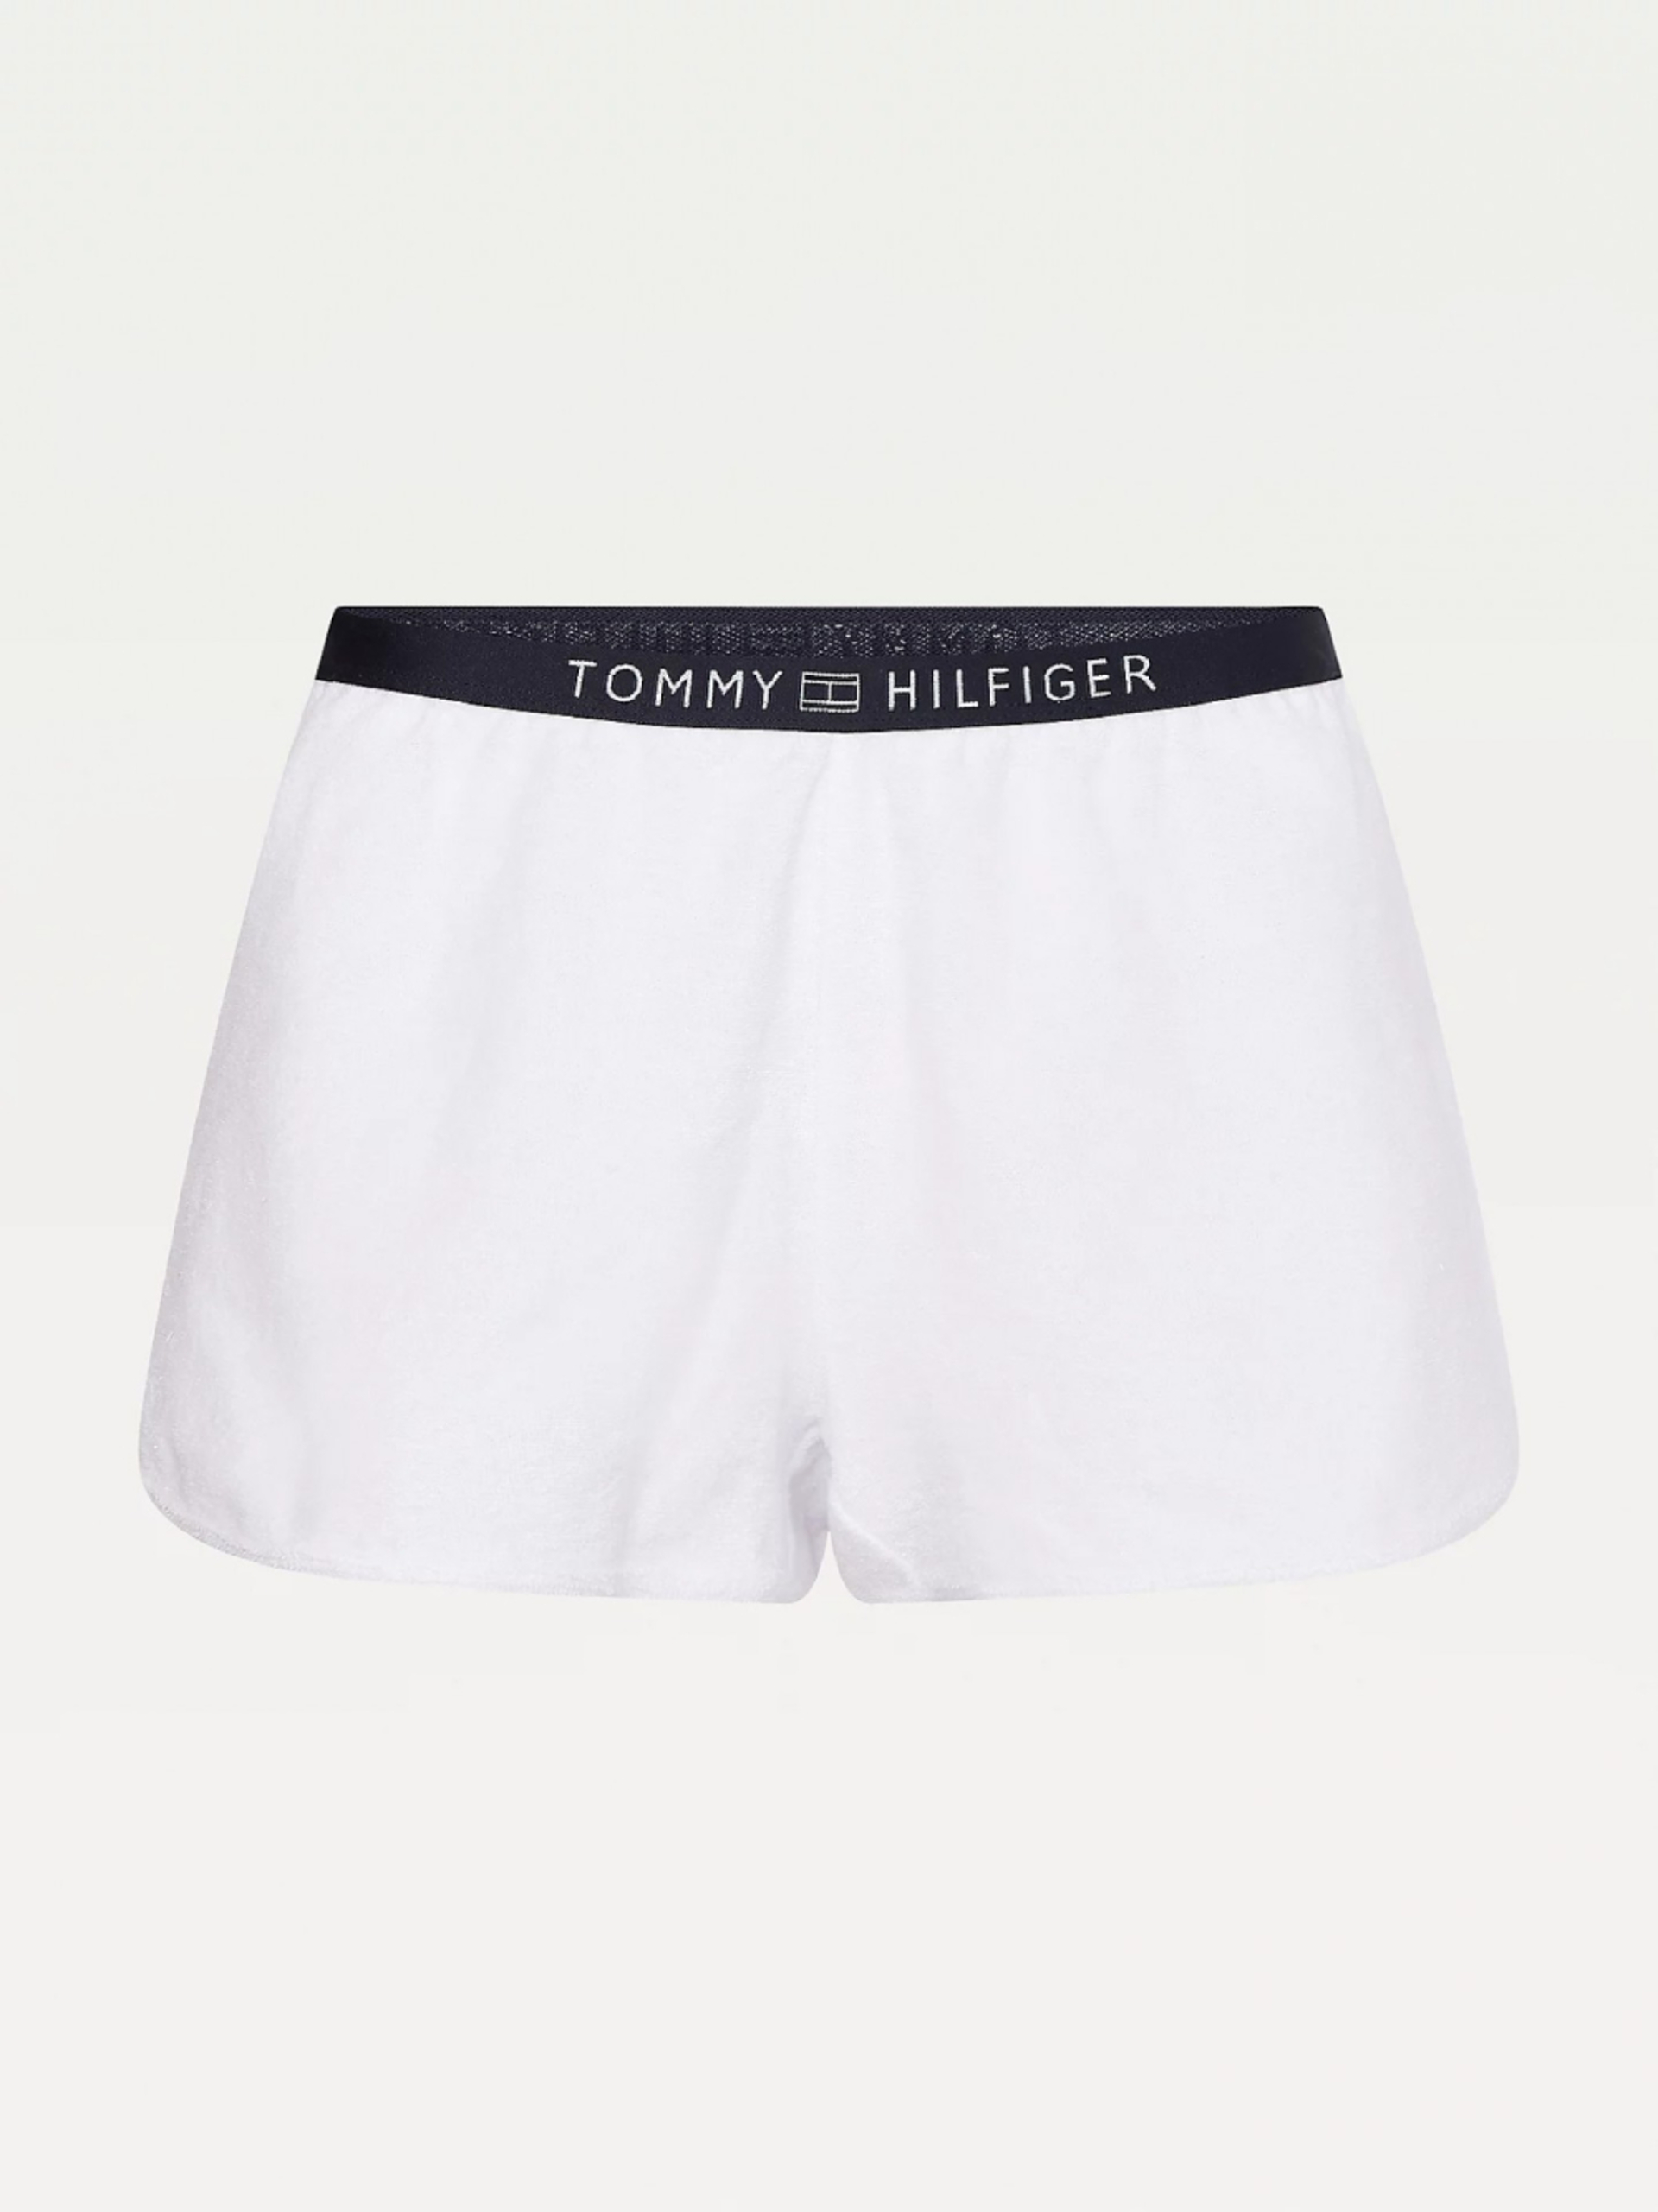 Tommy Hilfiger dámské bílé šortky - L (YBR)